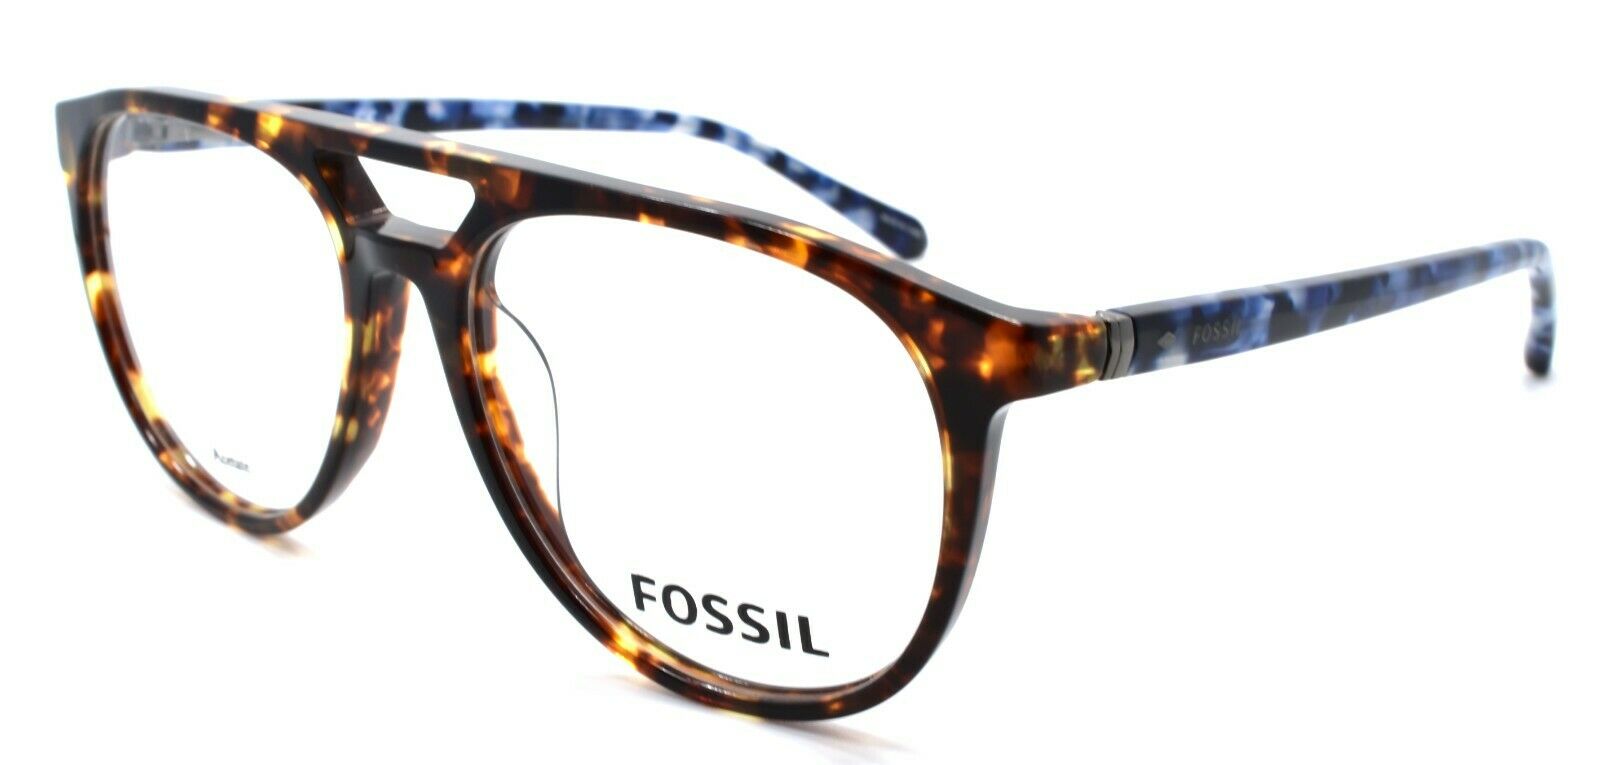 1-Fossil FOS 7054 086 Men's Eyeglasses Frames Aviator 53-16-145 Dark Havana / Blue-716736165844-IKSpecs